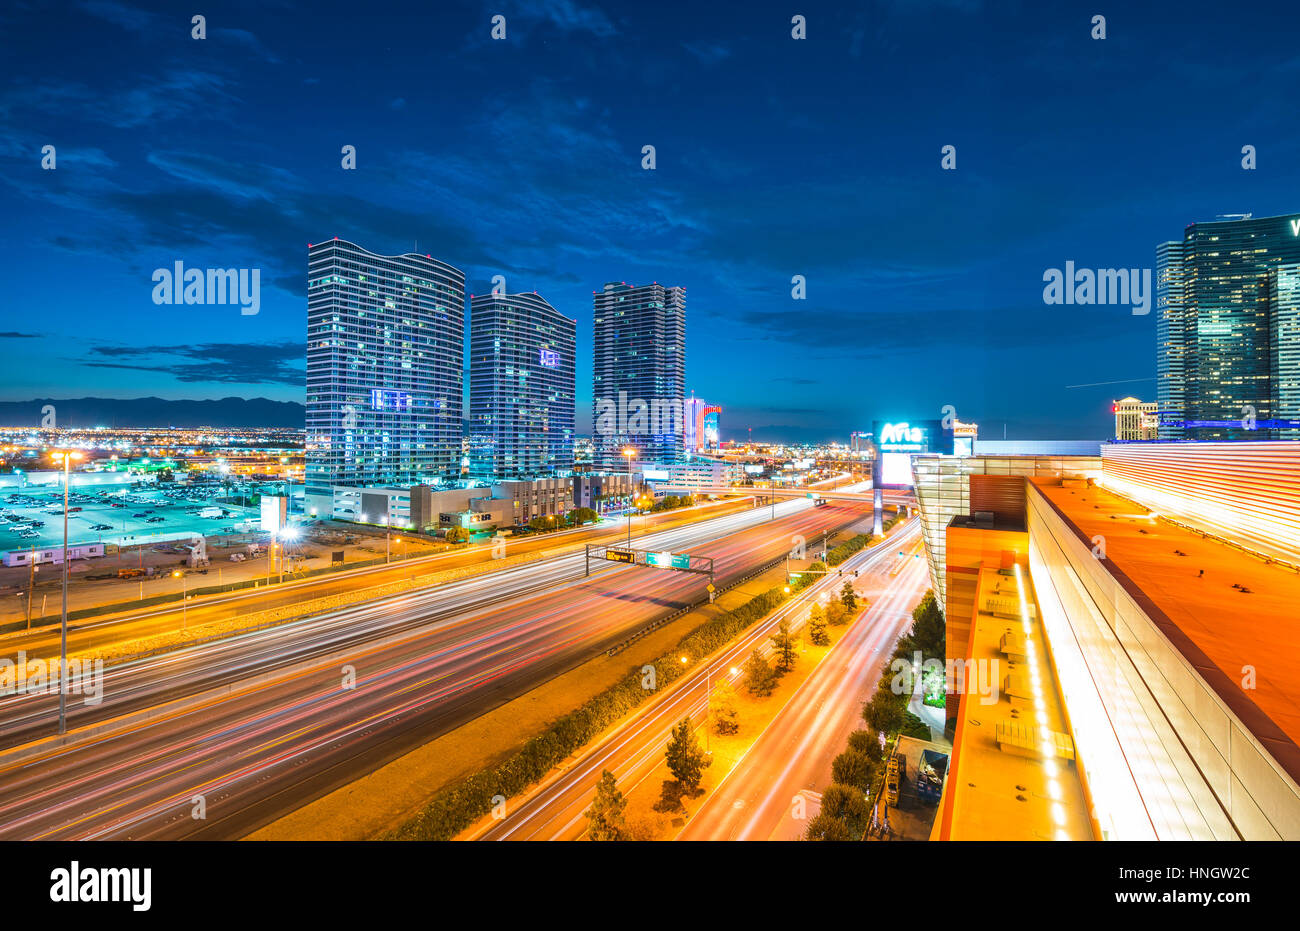 Las Vegas Nevada, USA.07/28/16 : vue panoramique de la ville de Las Vegas de nuit avec éclairage,trafic,las vegas Nevada, USA. Banque D'Images